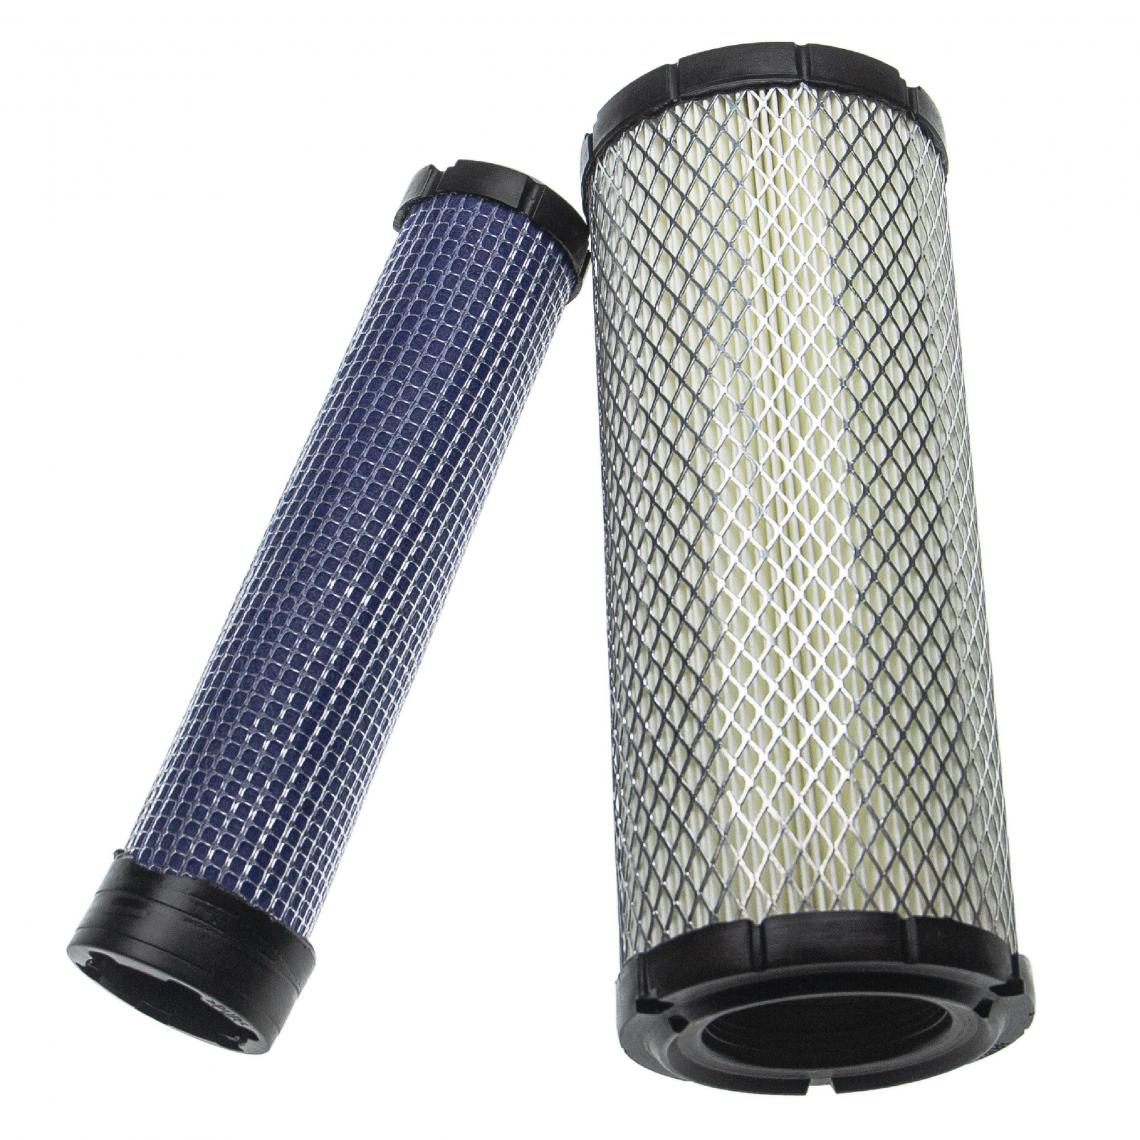 Vhbw - vhbw Lot de filtres compatible avec Kawasaki FH601V-FH721V, FH641D, FH680D, FH680V, FH721D engin de chantier; 1x filtre interne, 1x filtre extérieur - Autre appareil de mesure